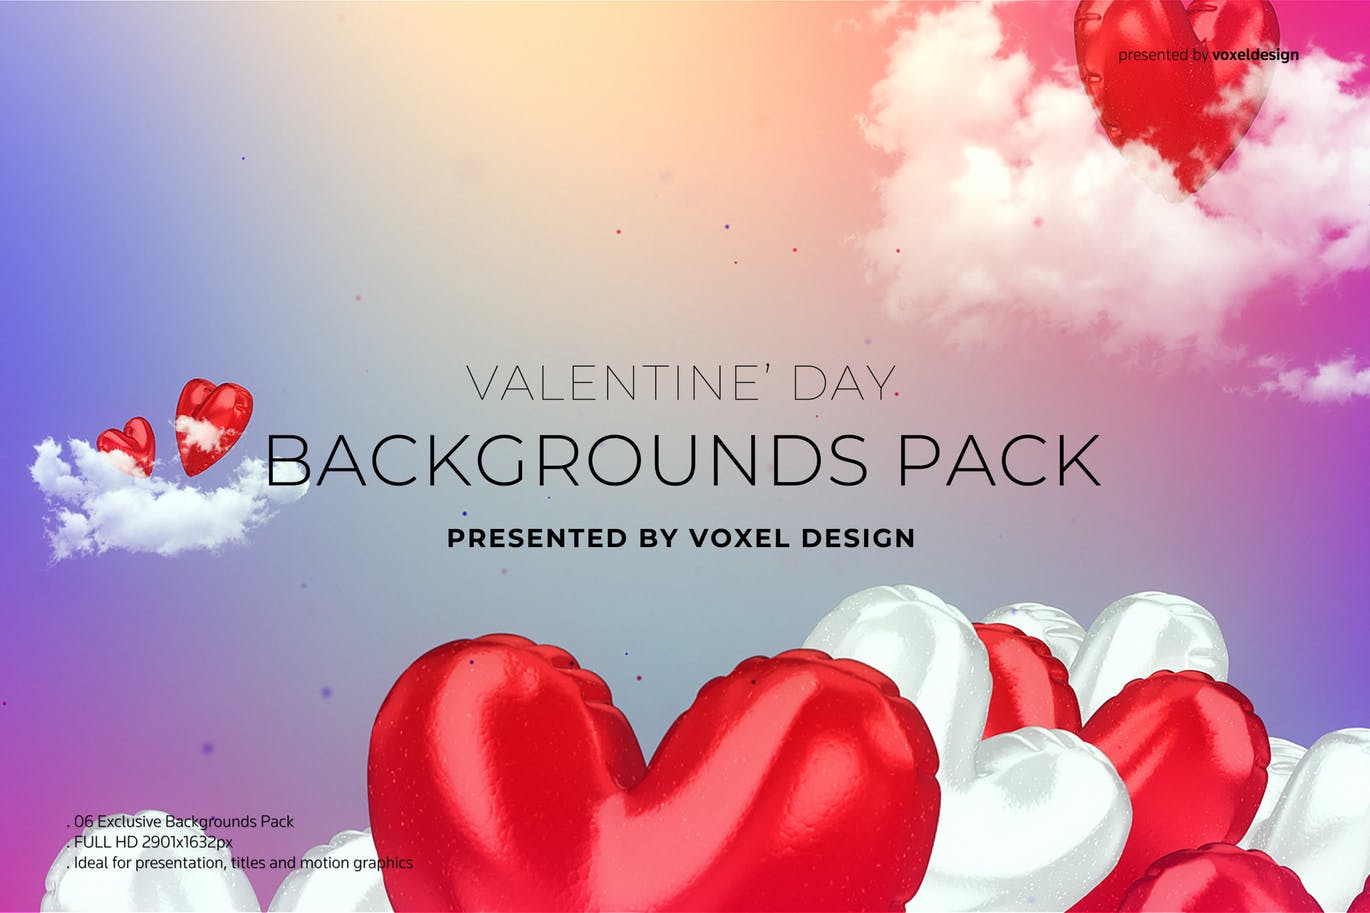 情人节主题甜蜜爱心背景图素材 Valentine’s Day Backgrounds Pack插图